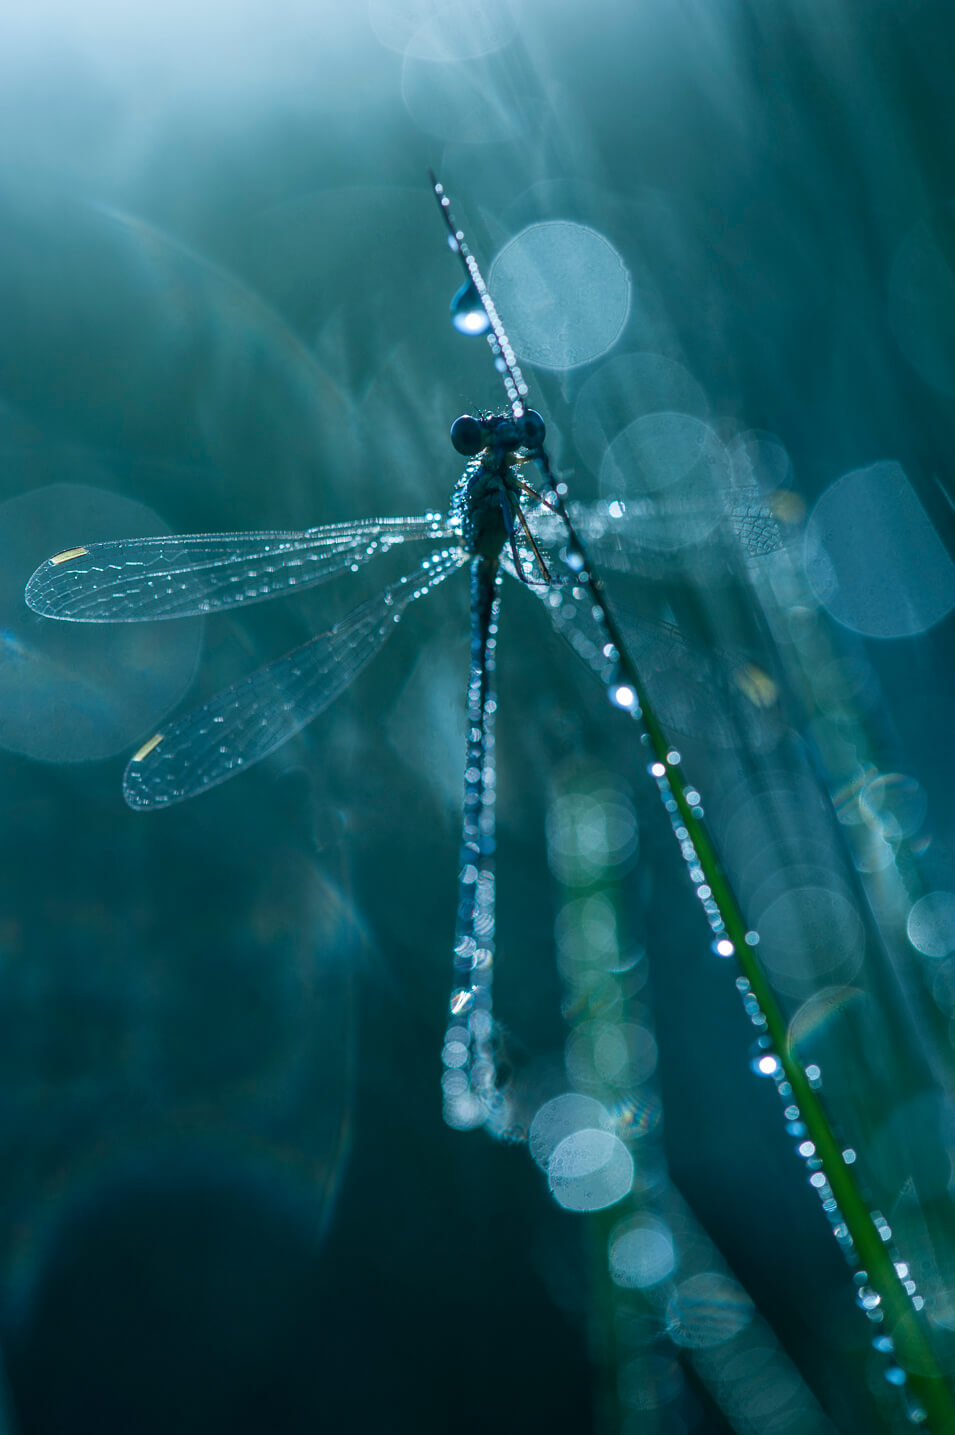 Zo kun je insecten fotograferen met dauw - 13